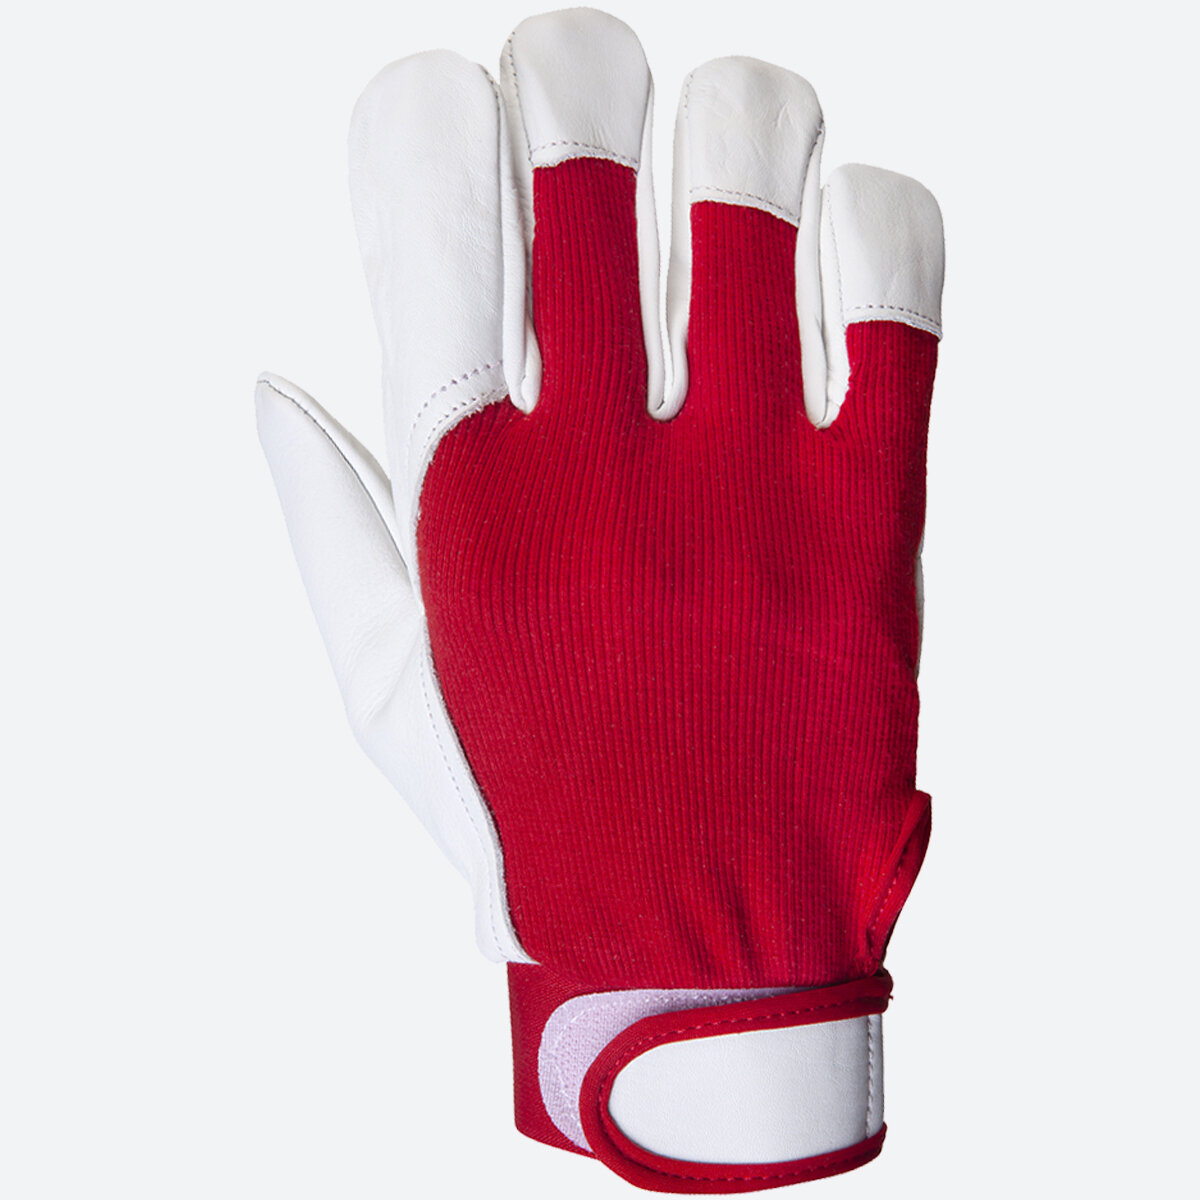 Защитные перчатки из кожи класса А и хлопка, Jeta Safety JLE301 Mechanic, размер L, 1 пара